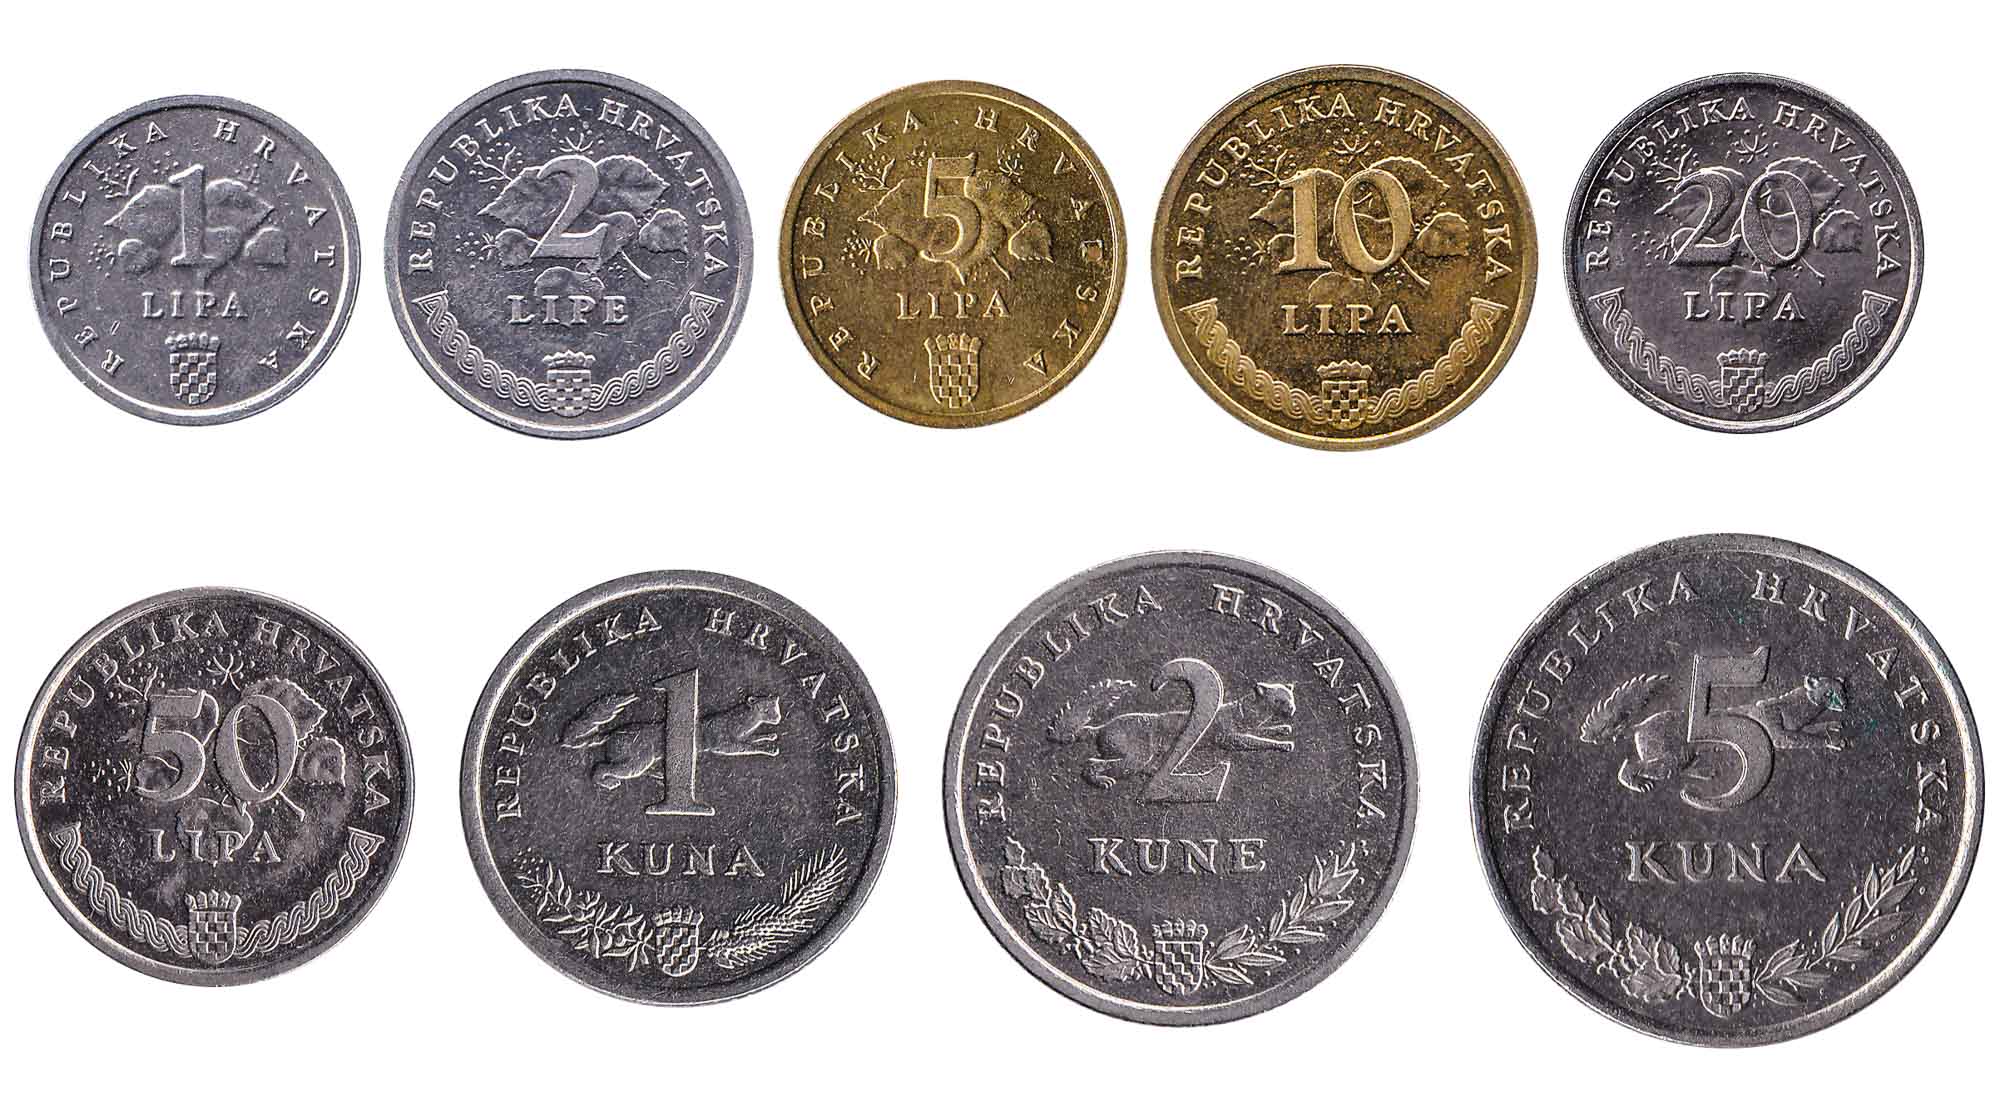 Croatian kuna coins